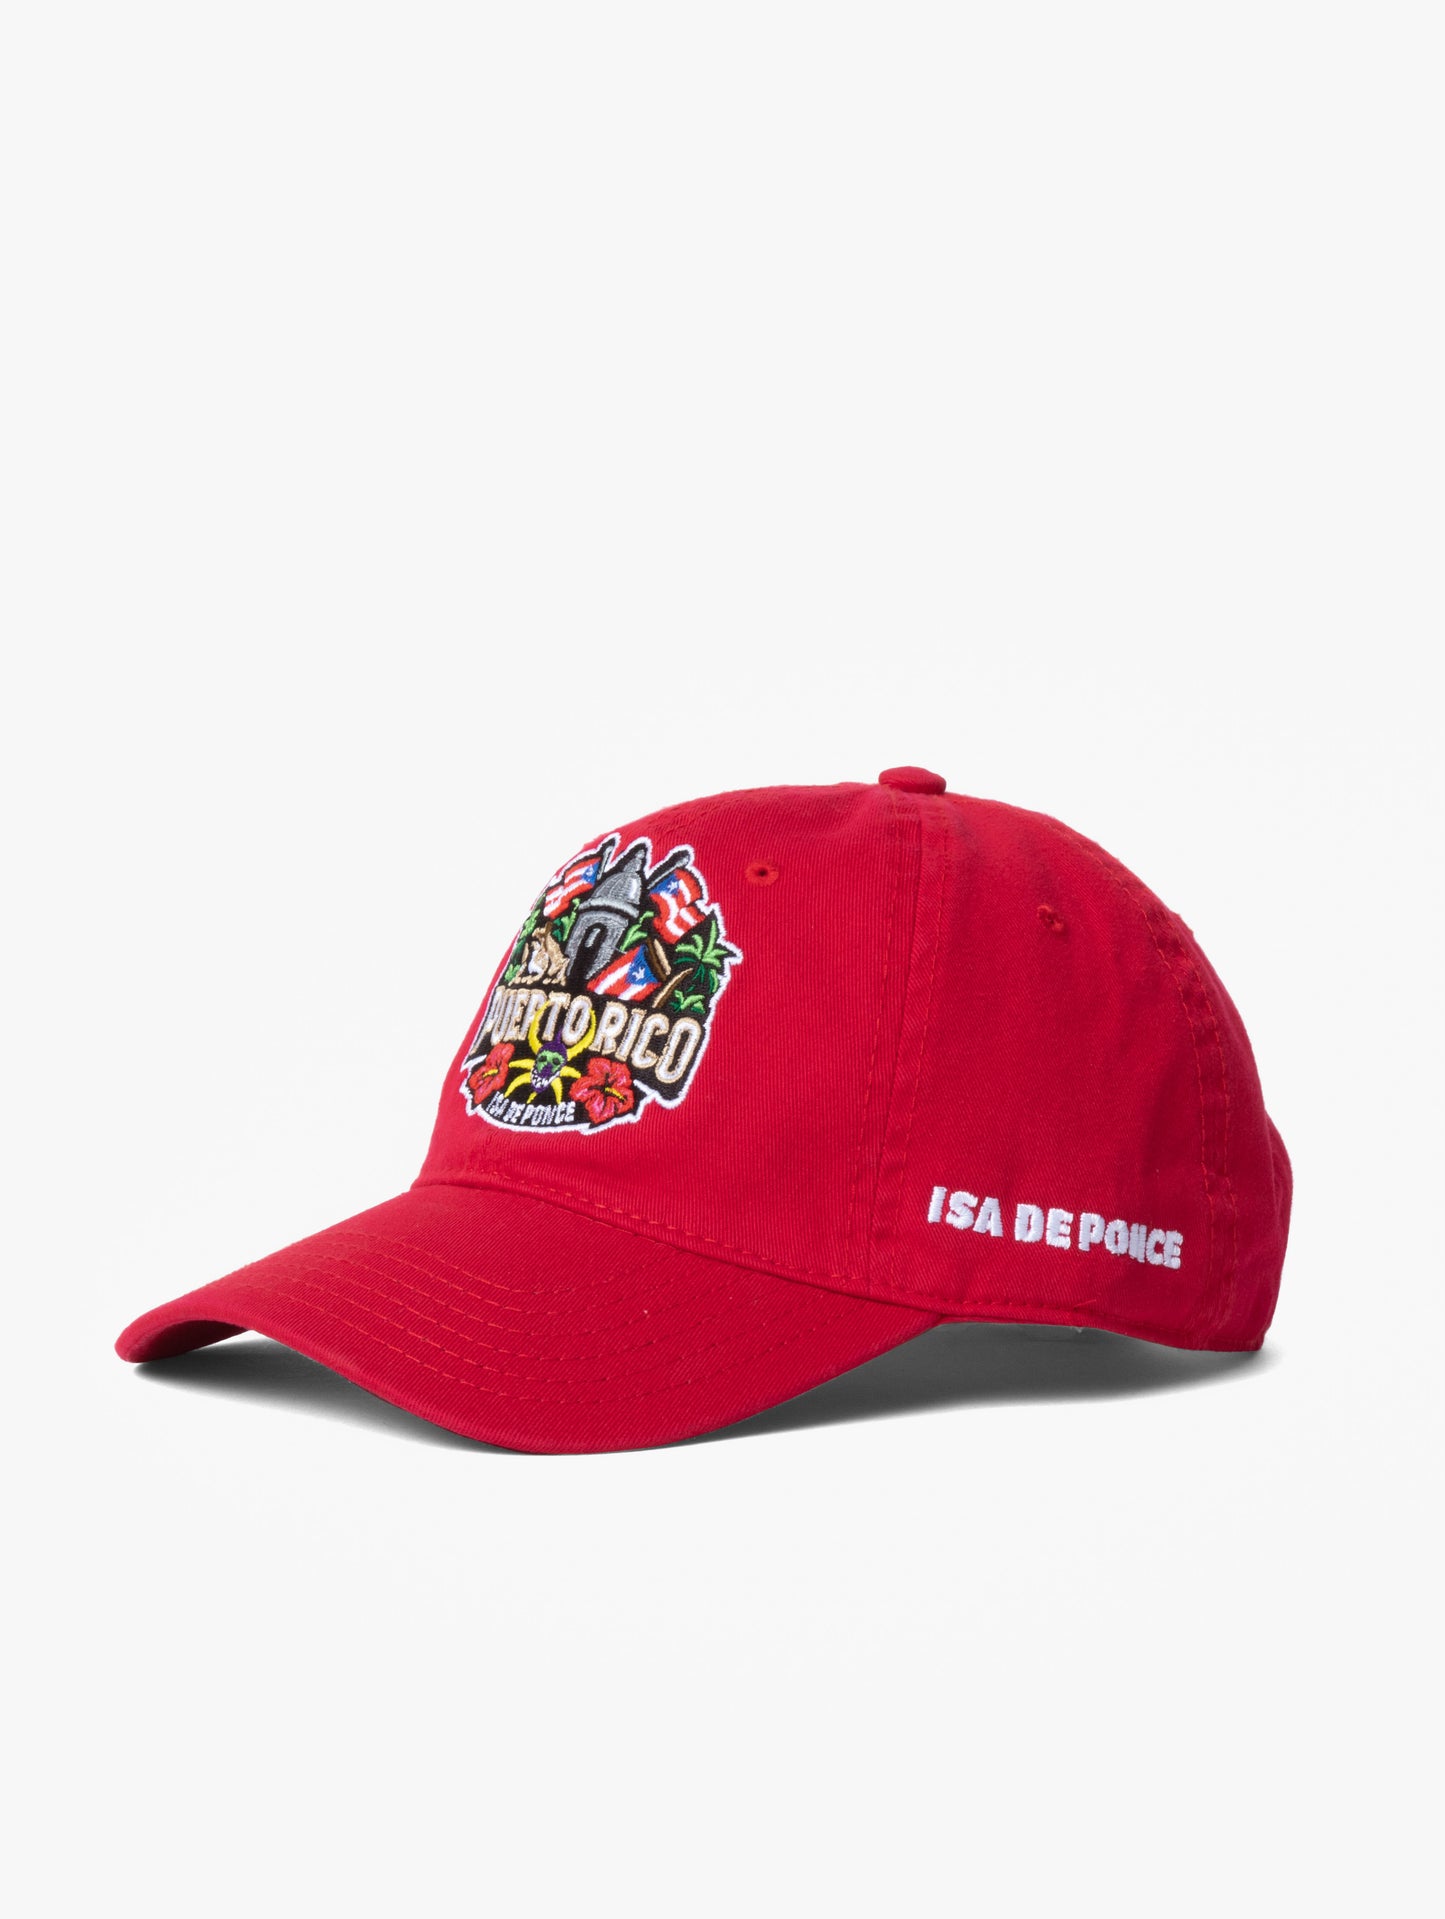 Viva Puerto Rico Dad-hat